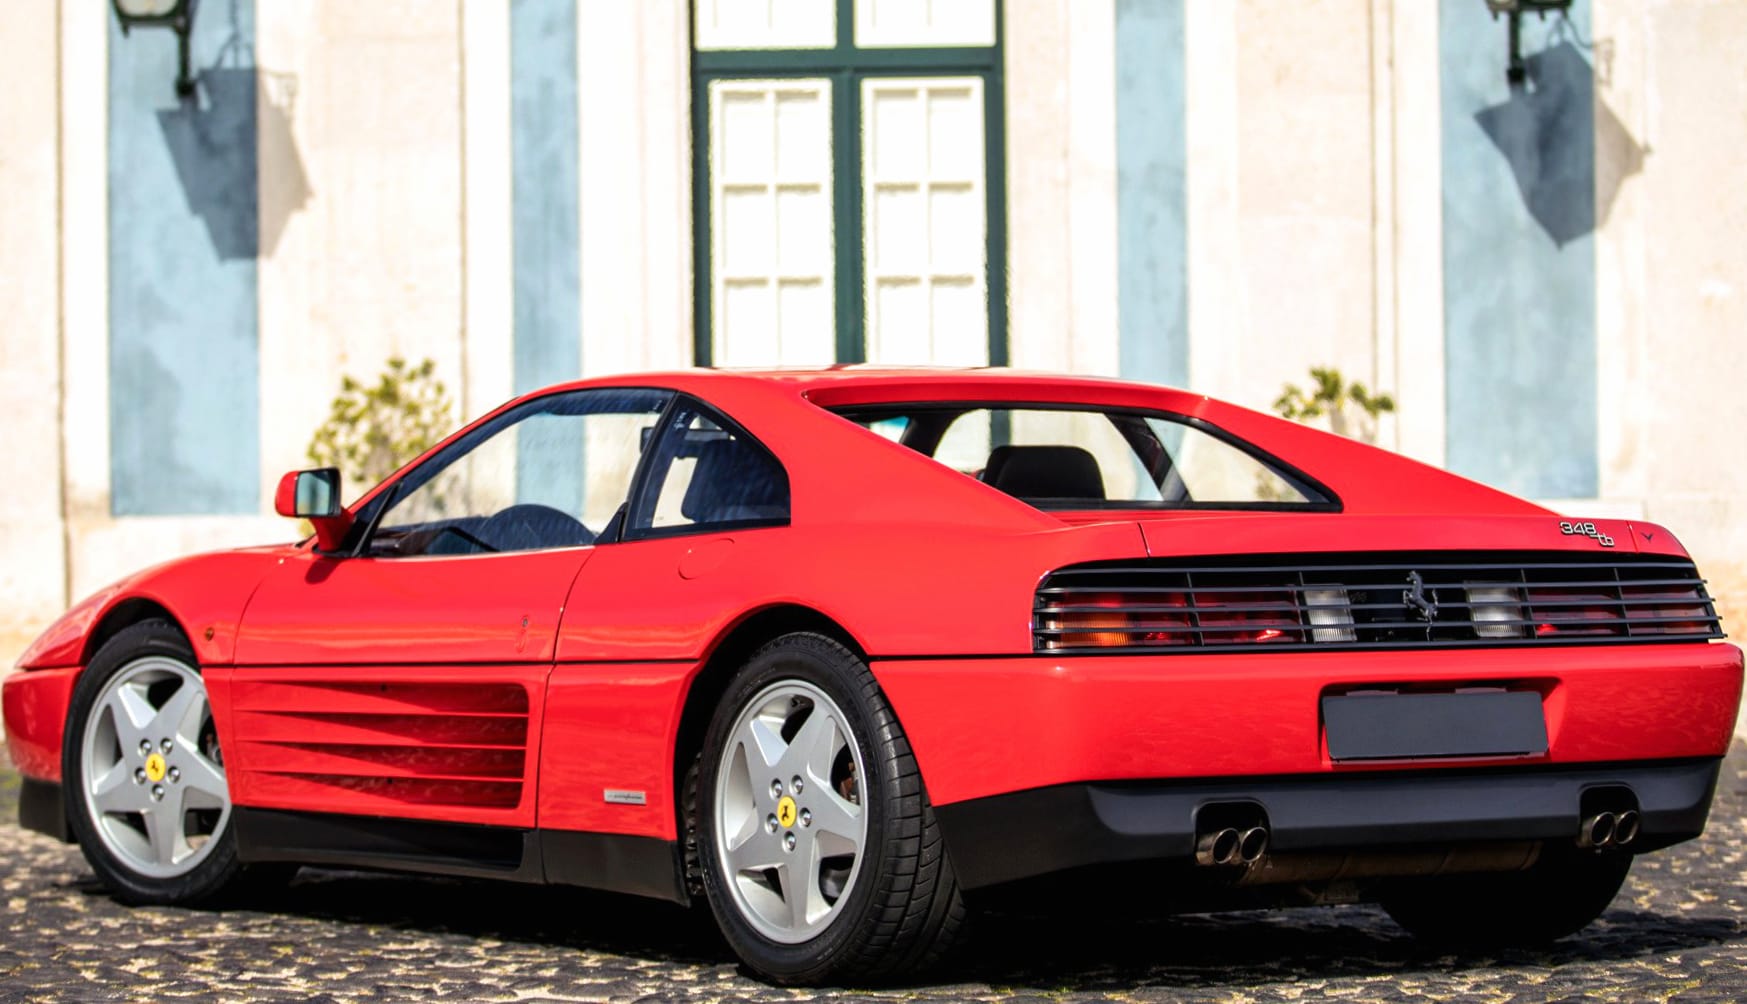 Ferrari 348 TB at 1600 x 1200 size wallpapers HD quality